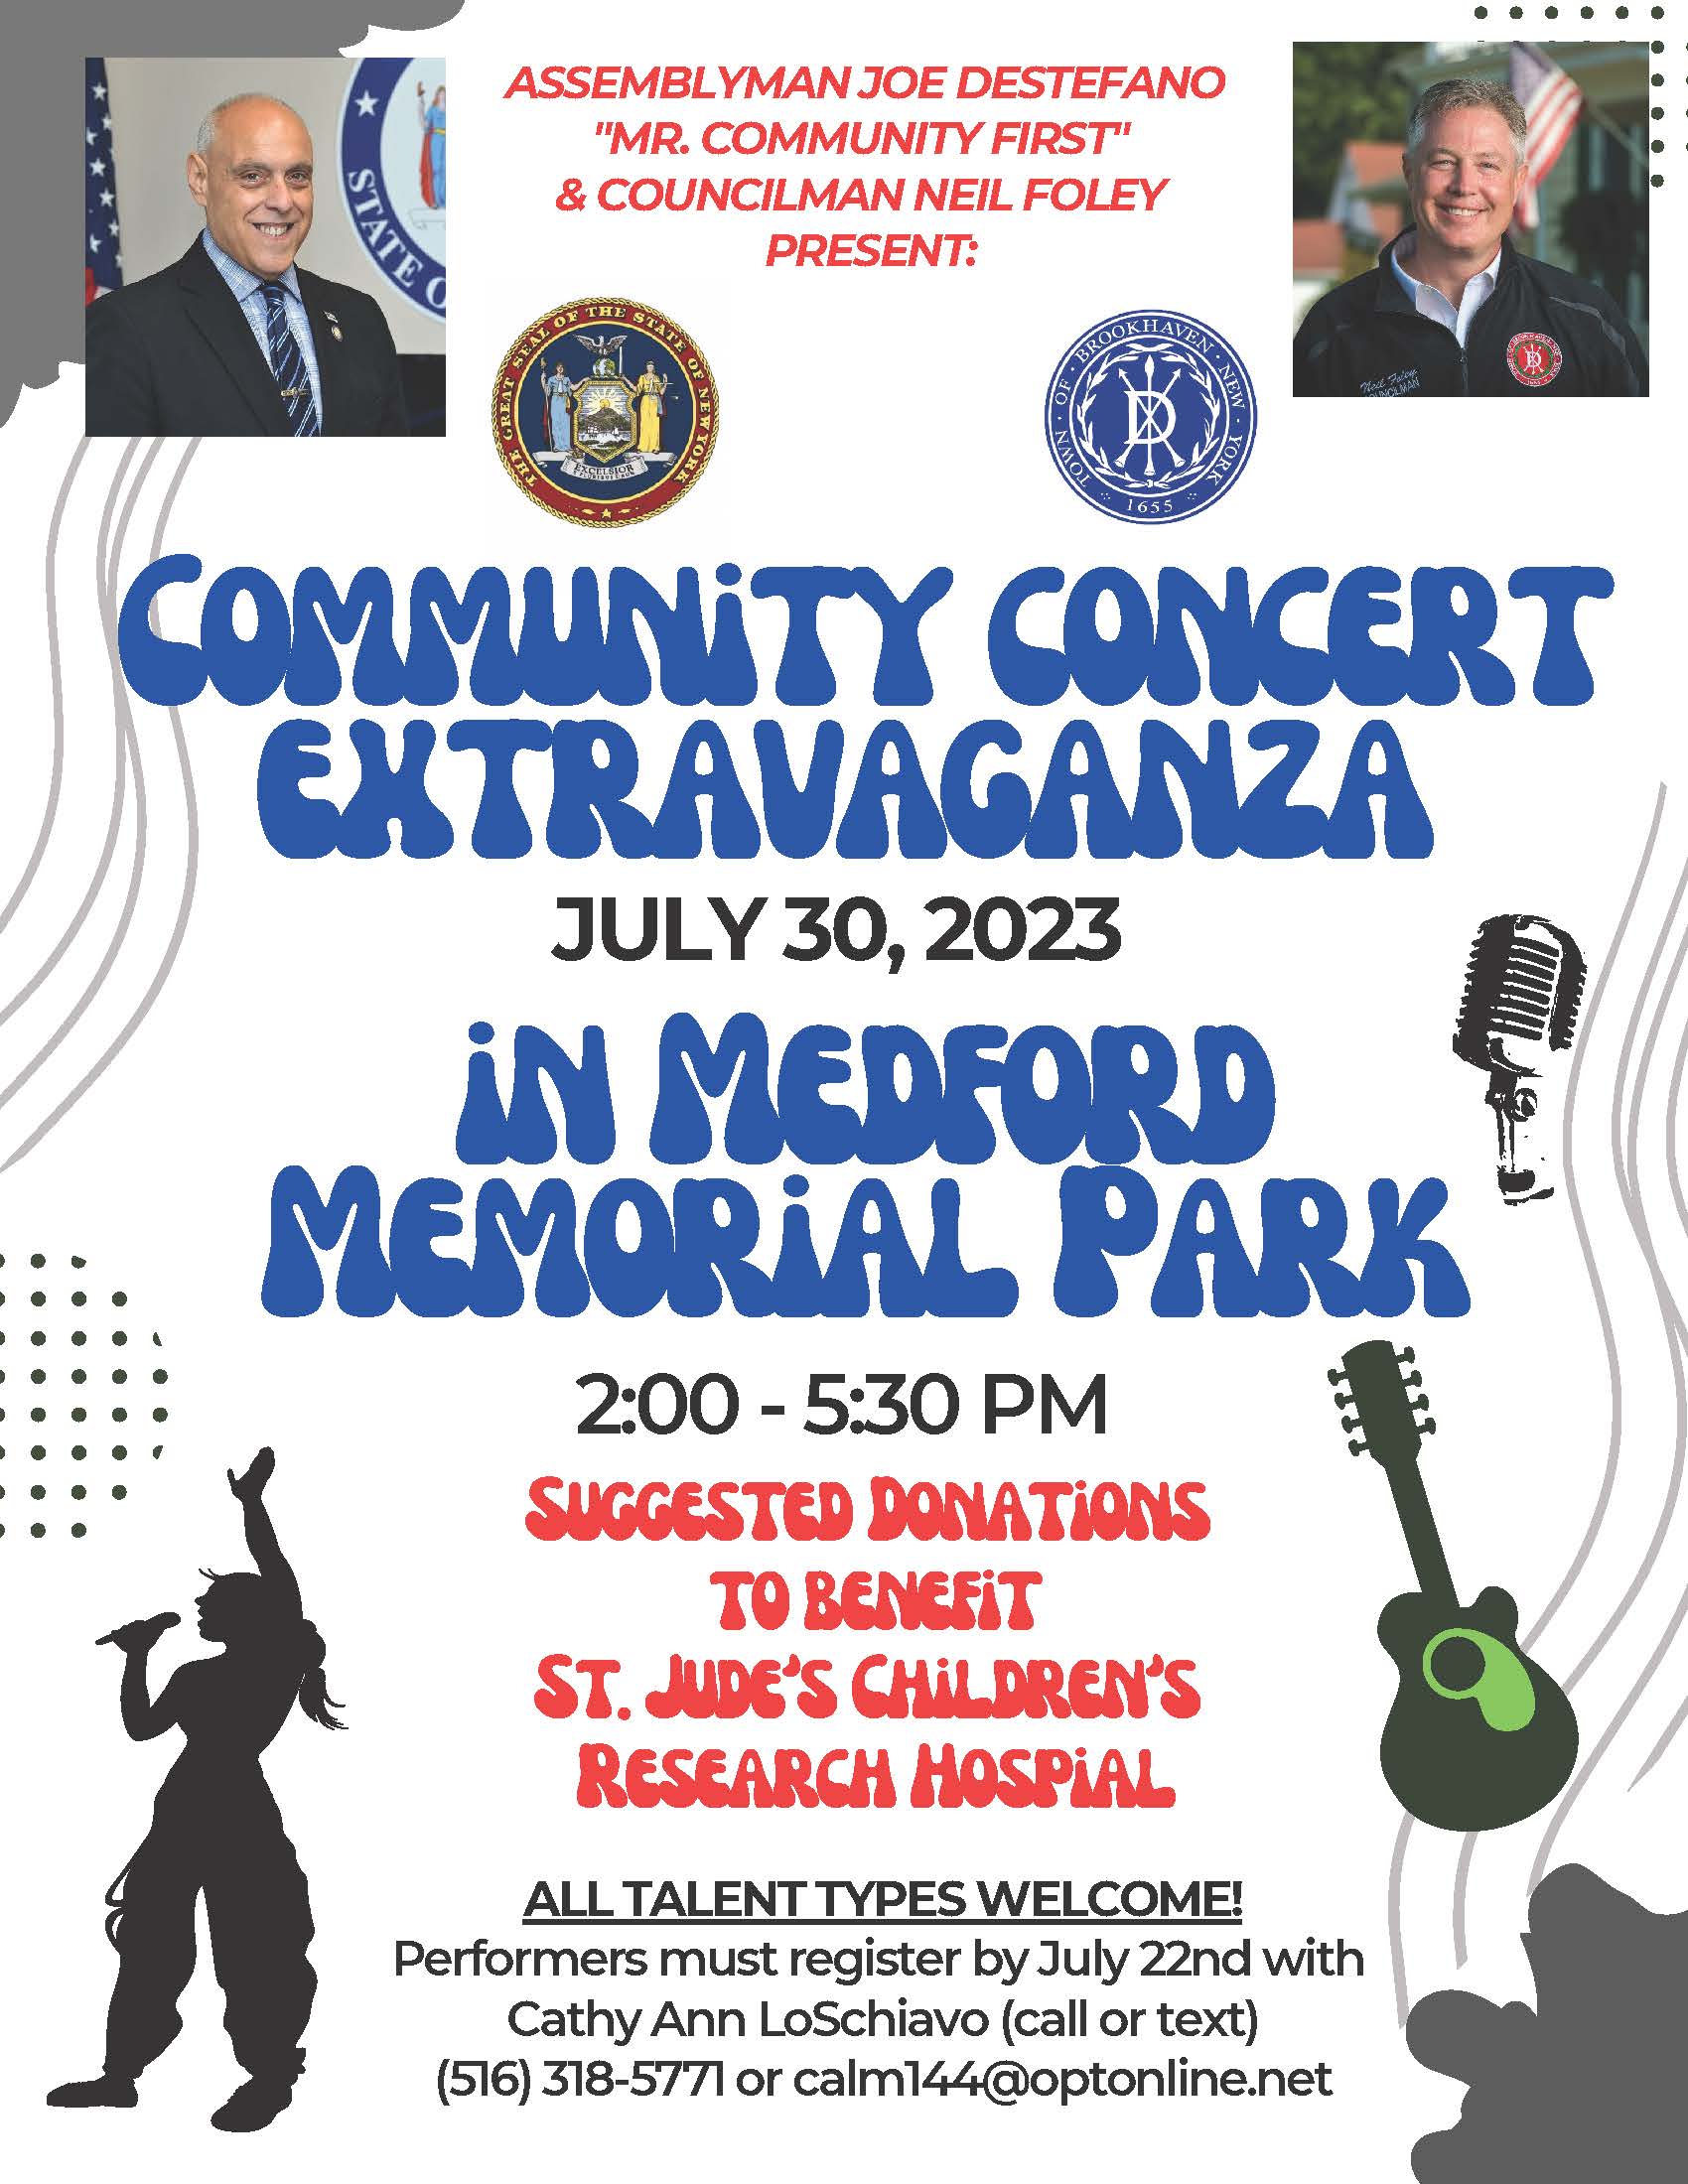 Community Concert Extravaganza